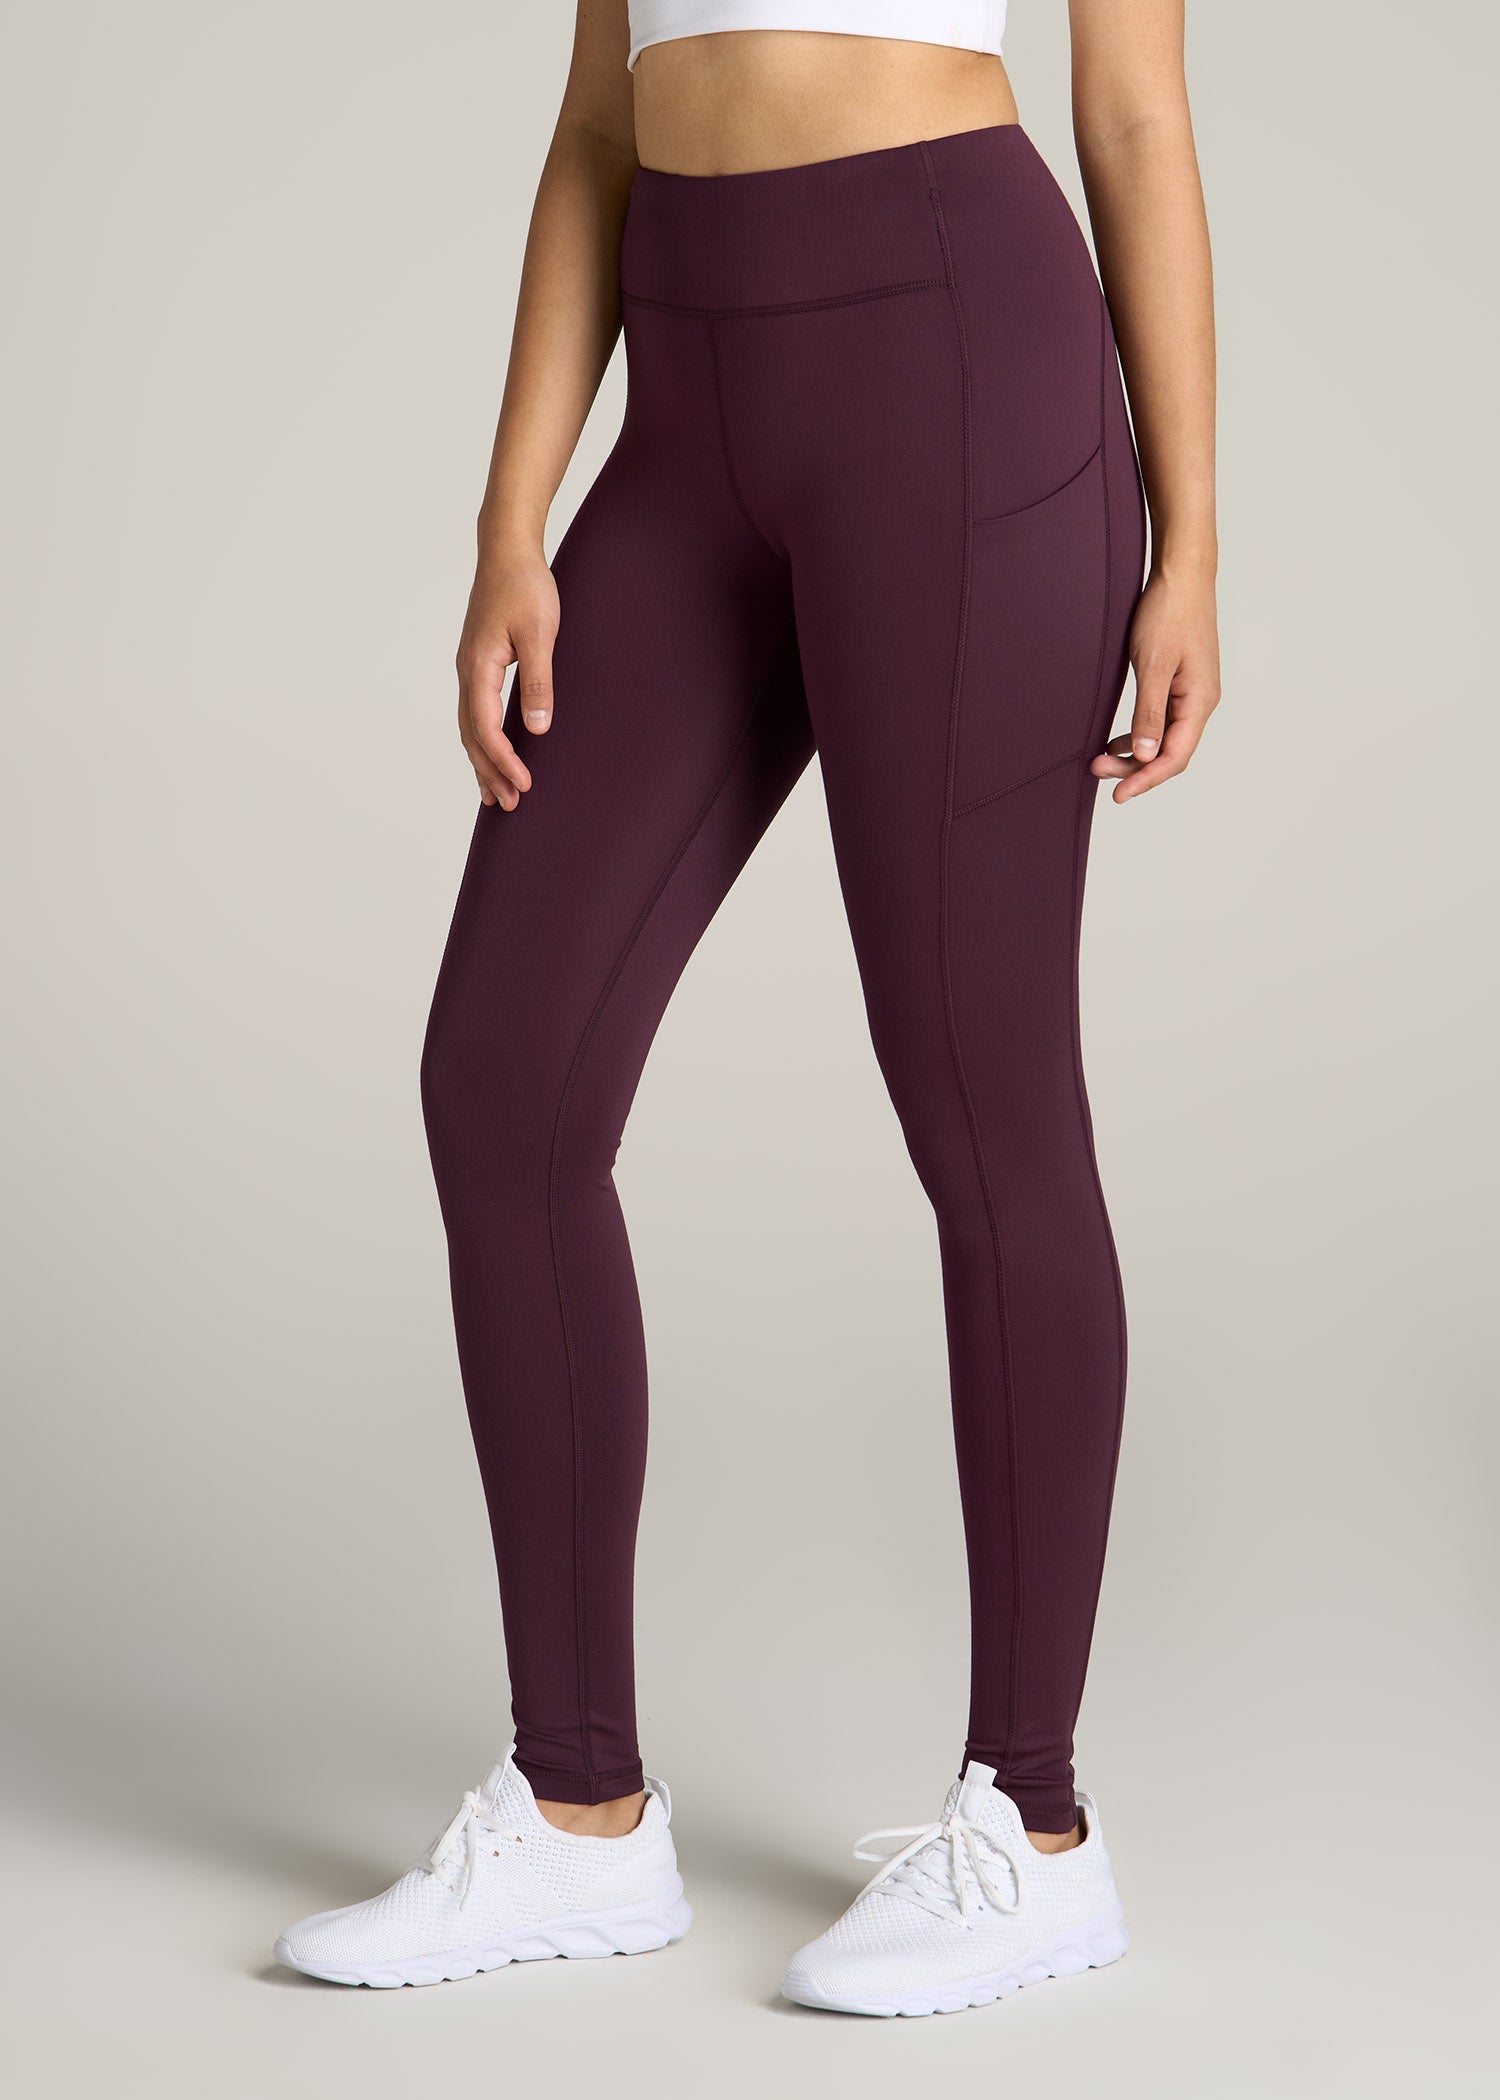 lululemon athletica, Pants & Jumpsuits, Lululemon Align Leggings Purple  Ombr Size